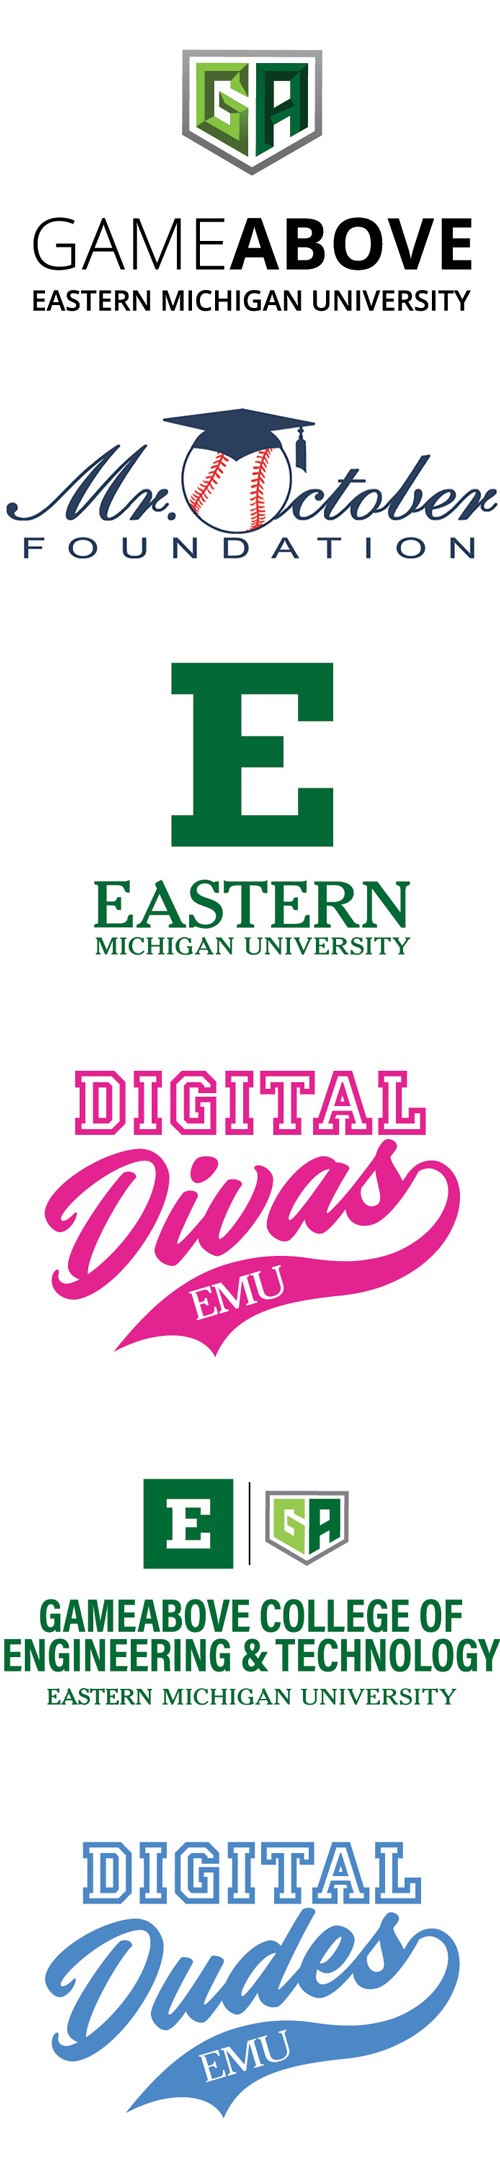 GameAbove, Mr. October, EMU, Digital Divas, EMU|GameAbove CET, and Digital Dudes logos